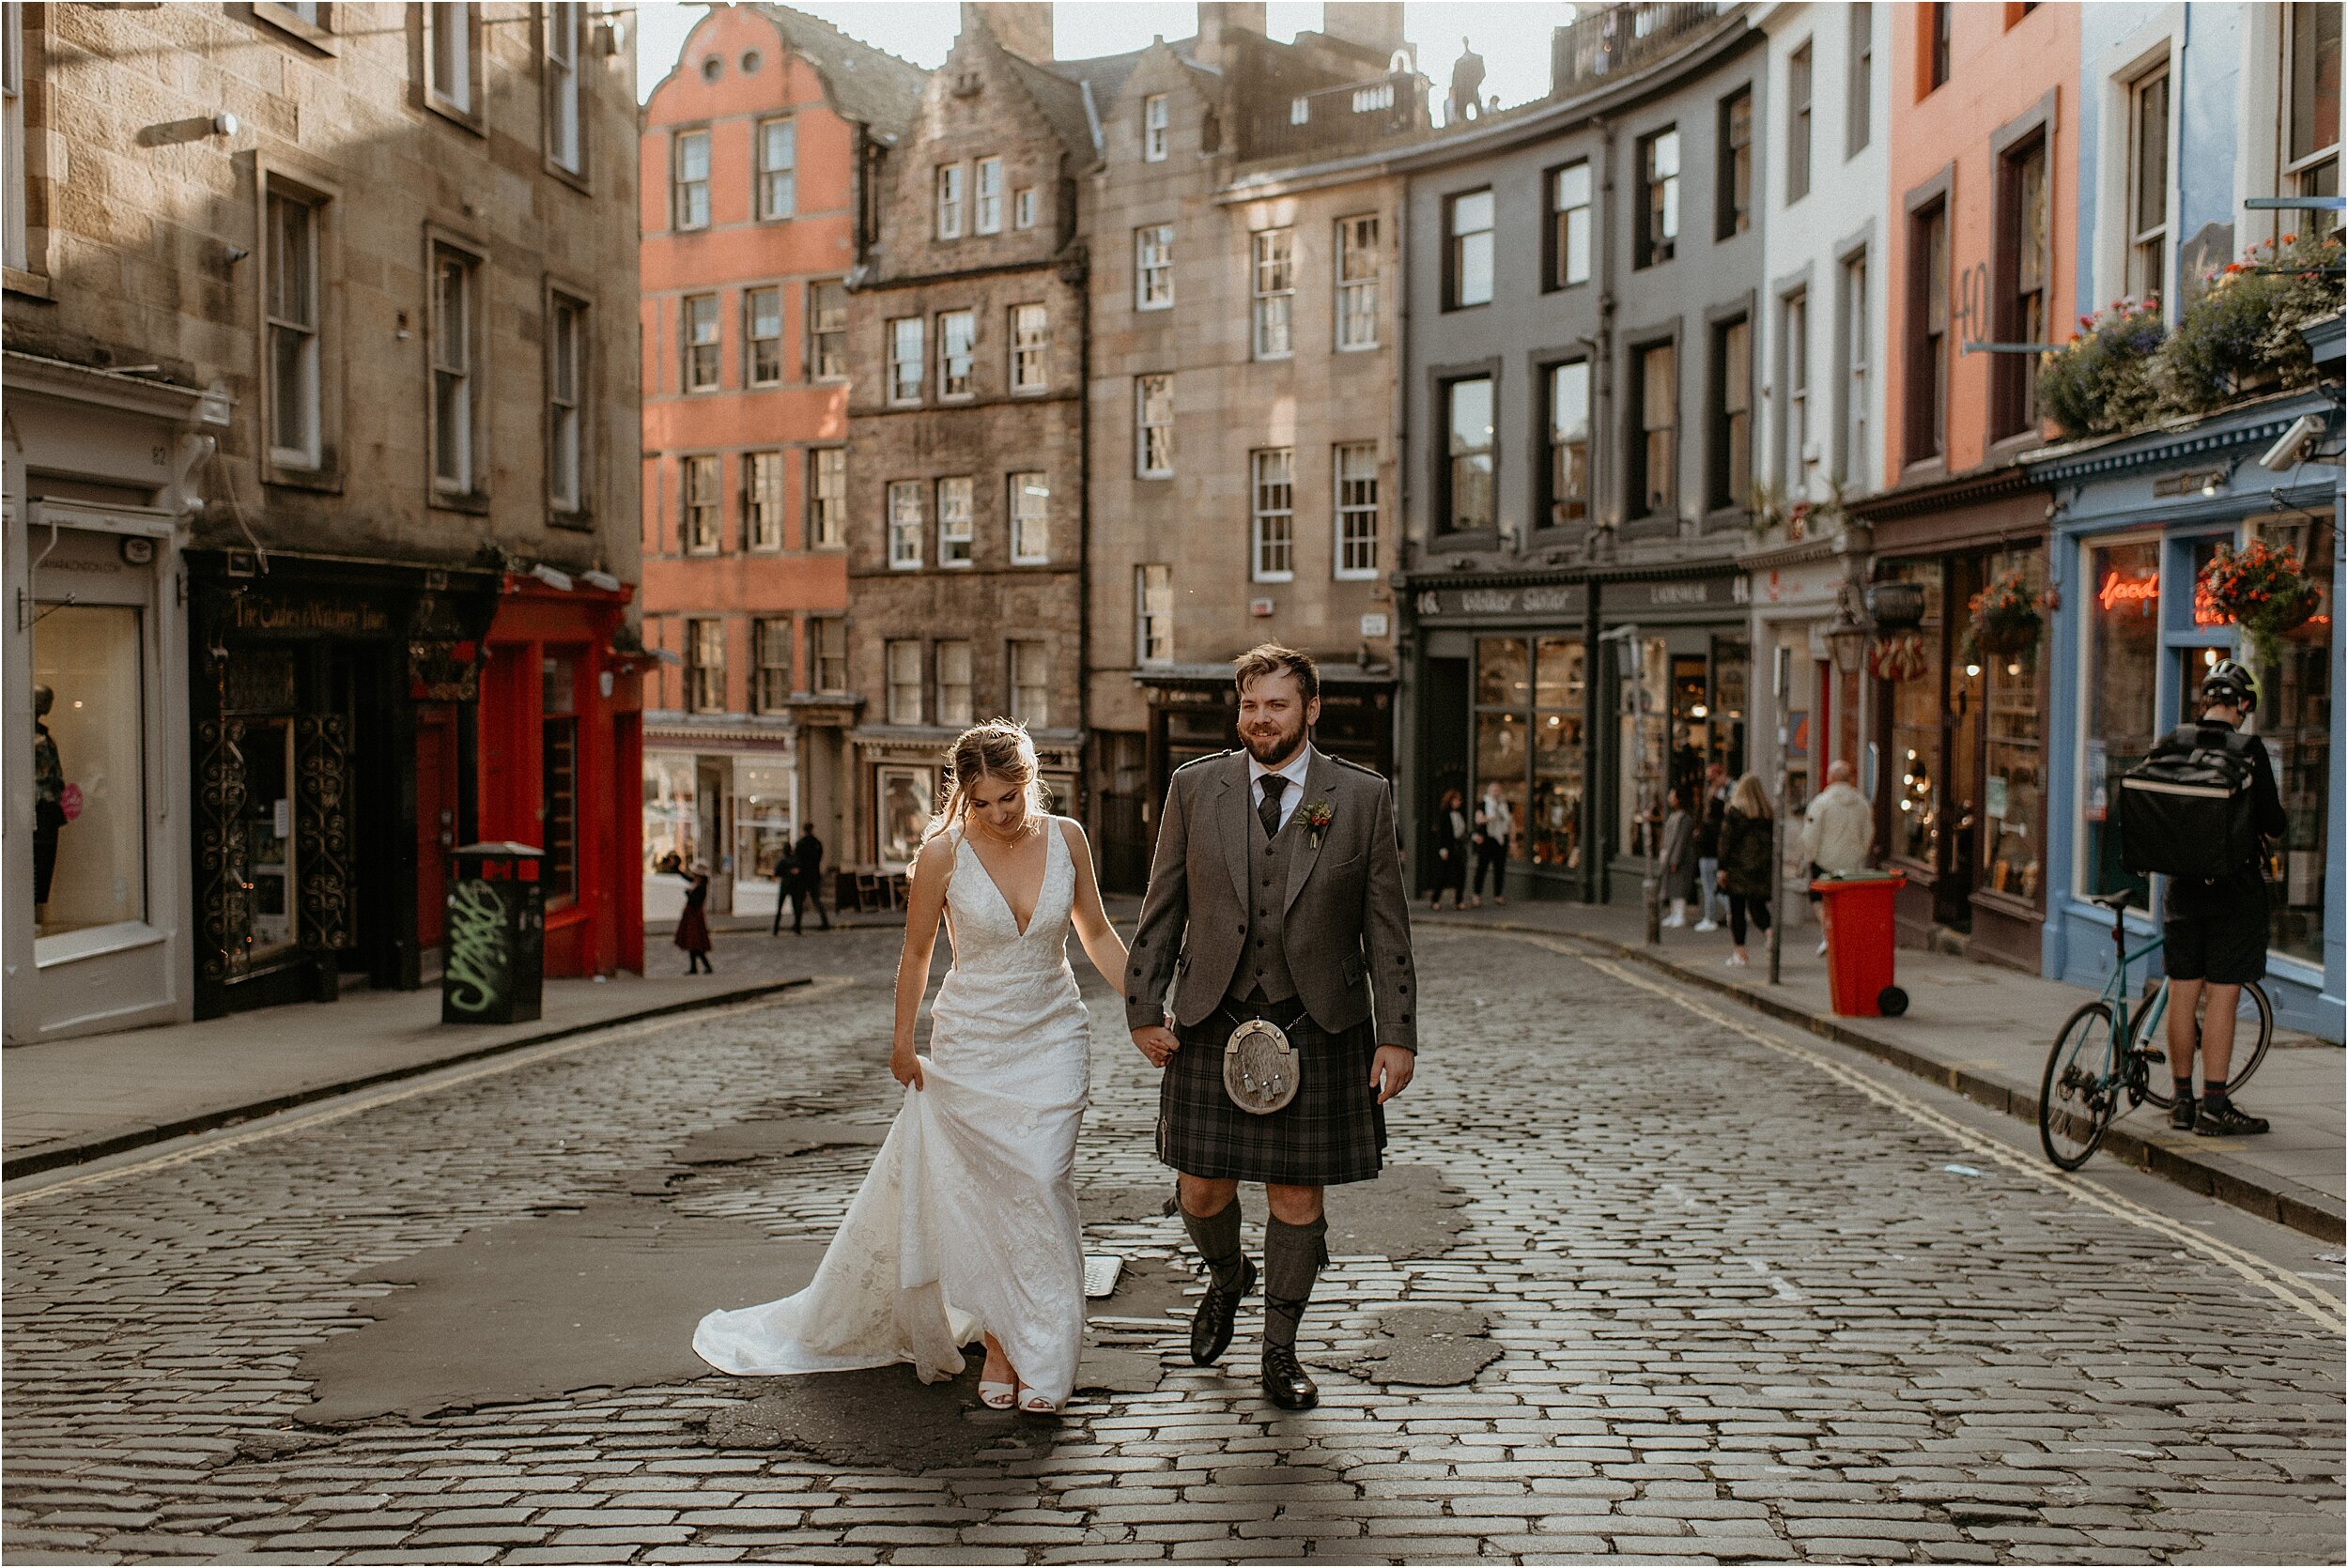 Timberyard-wedding-Edinburgh-69.jpg